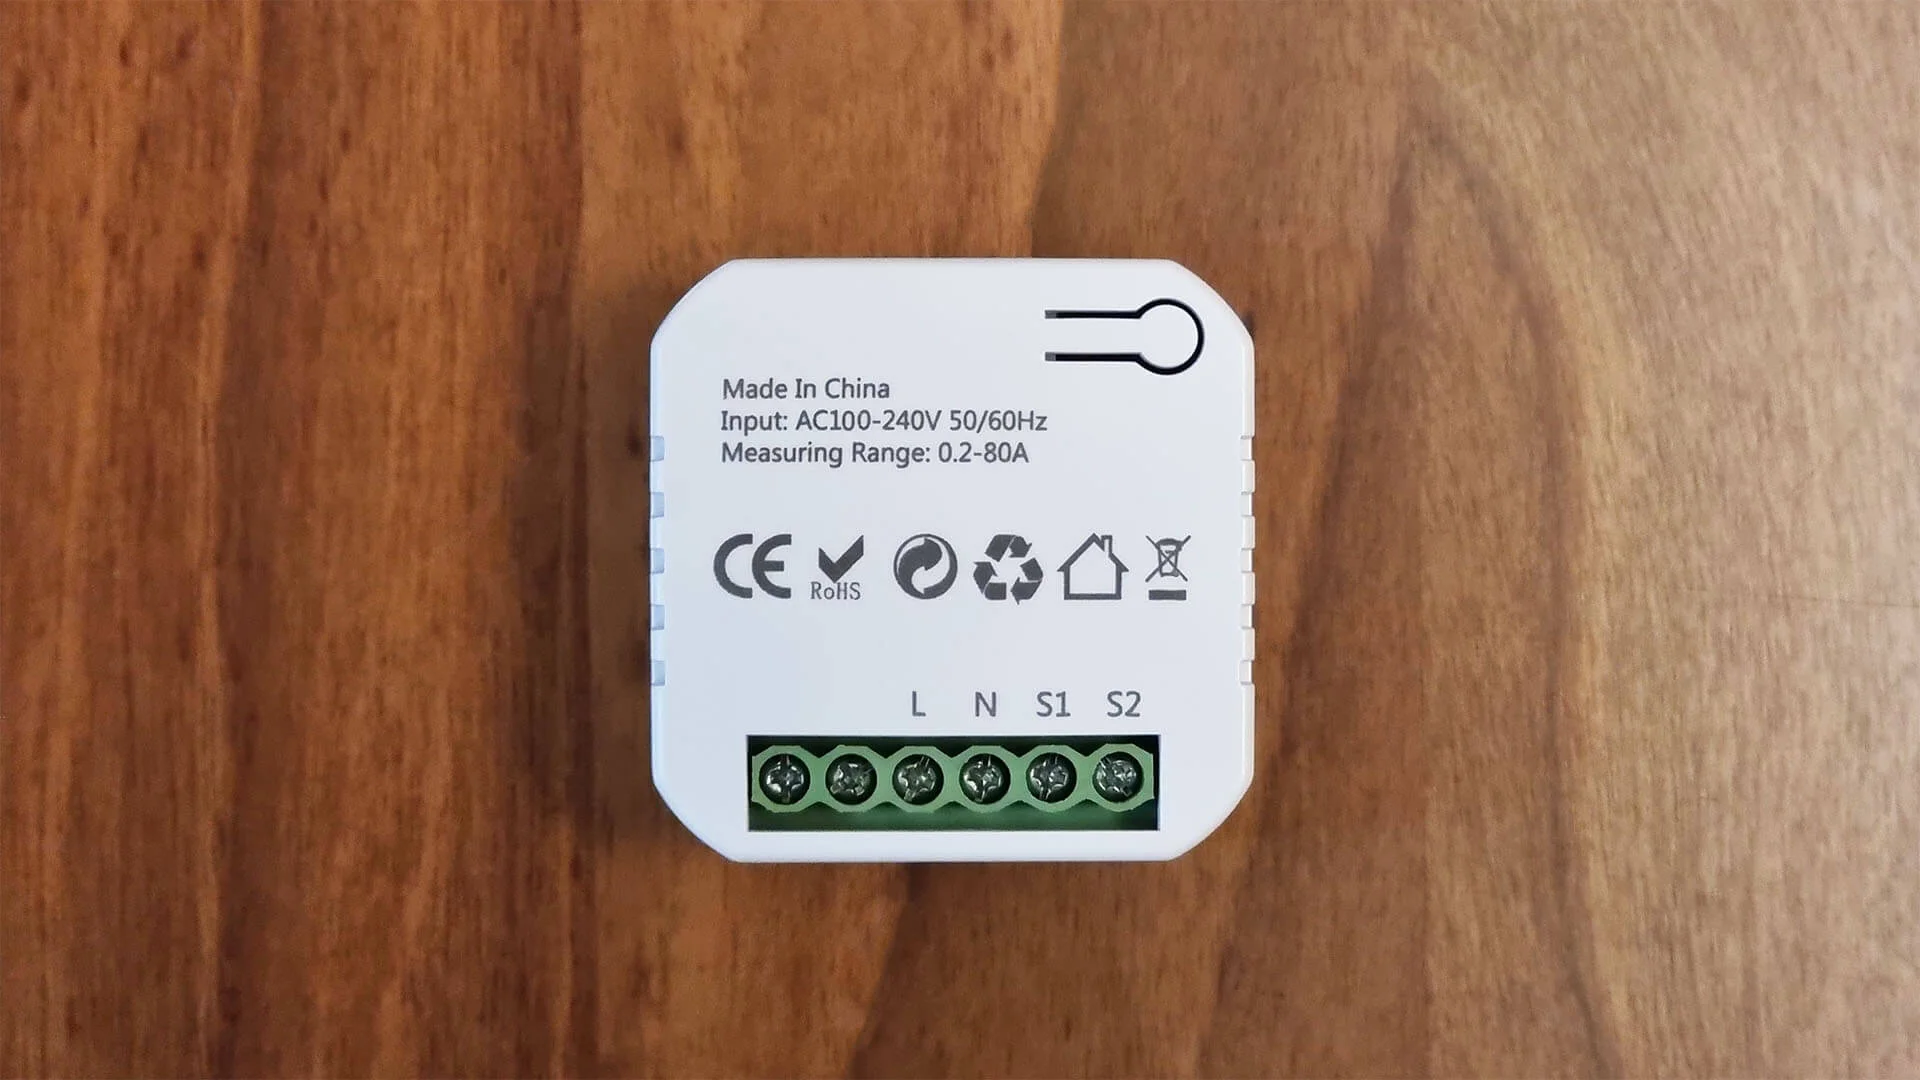 Moes Zigbee Smart Plug with Energy Meter Review - SmartHomeScene